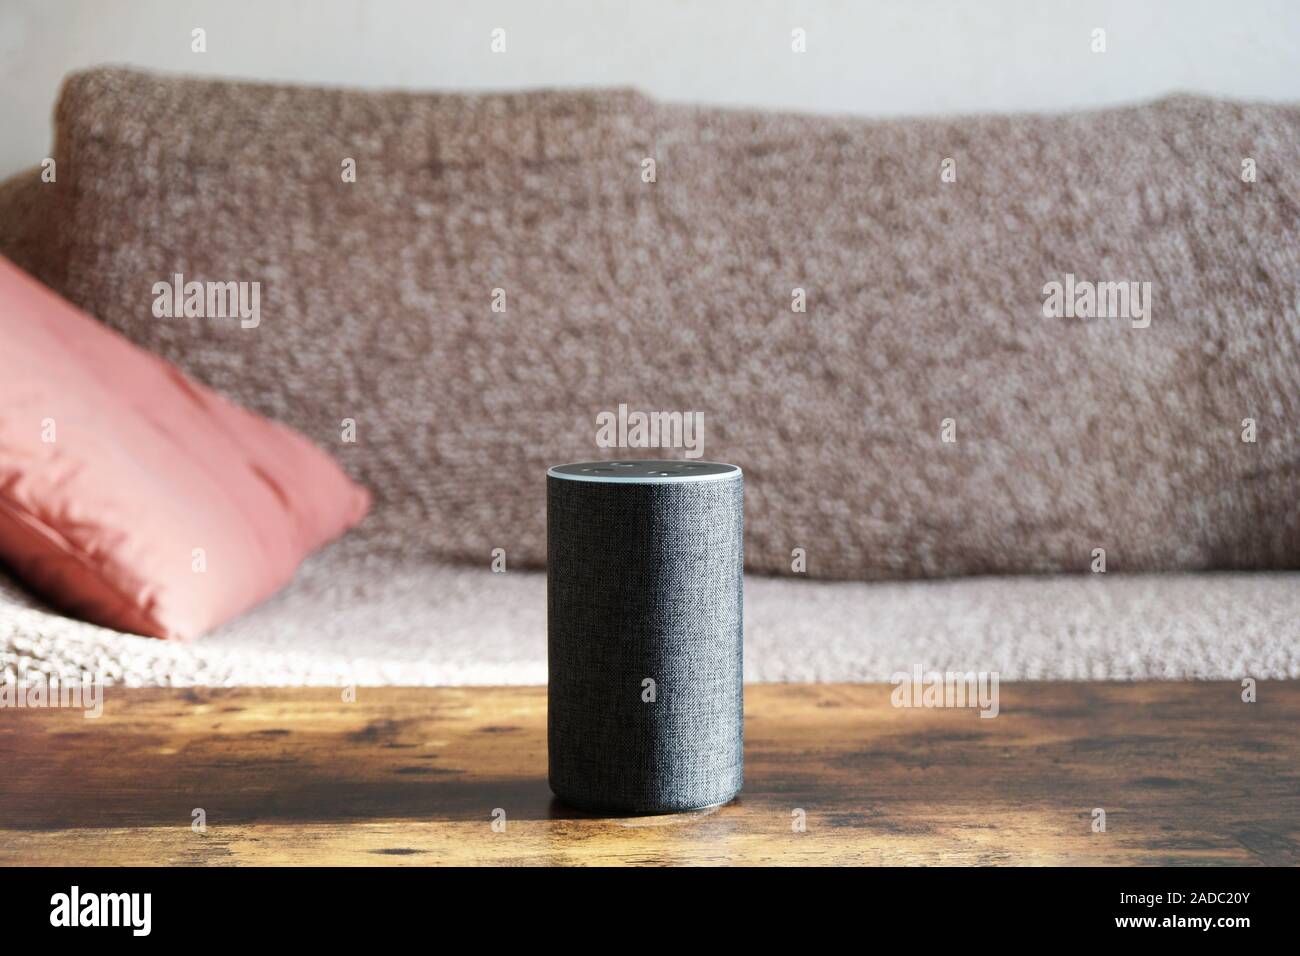 Smart l'orateur debout sur une table basse - contrôle vocal mains-libres assistant virtuel pour smart home Banque D'Images